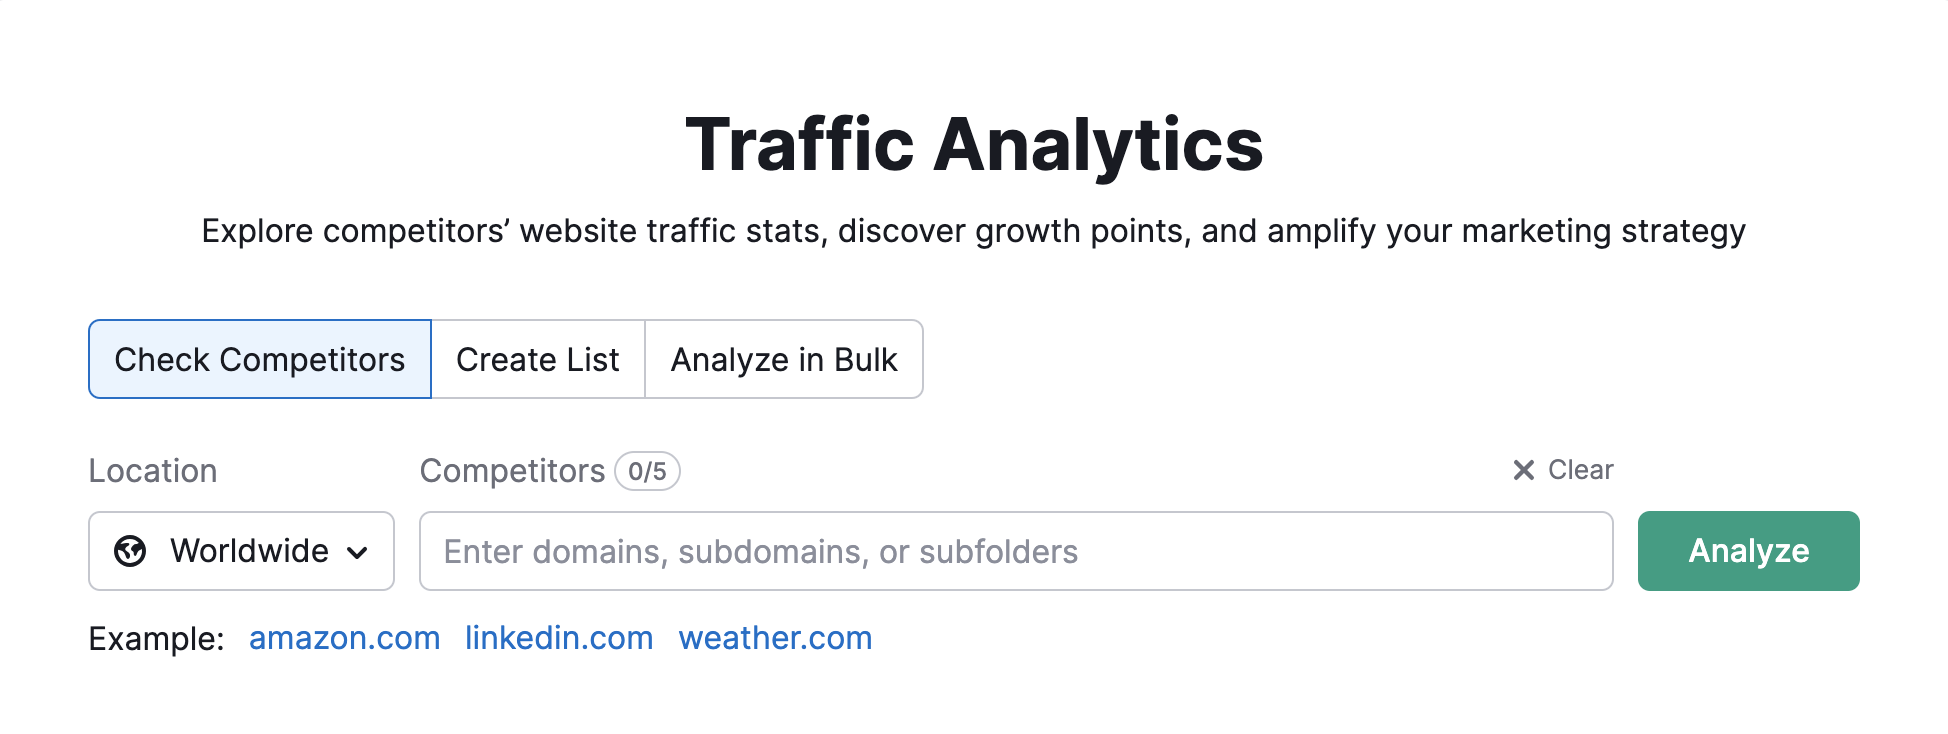 Página inicial do Traffic Analytics na Semrush. Mostrando onde digitar o domínio do concorrente e selecionar o local. 